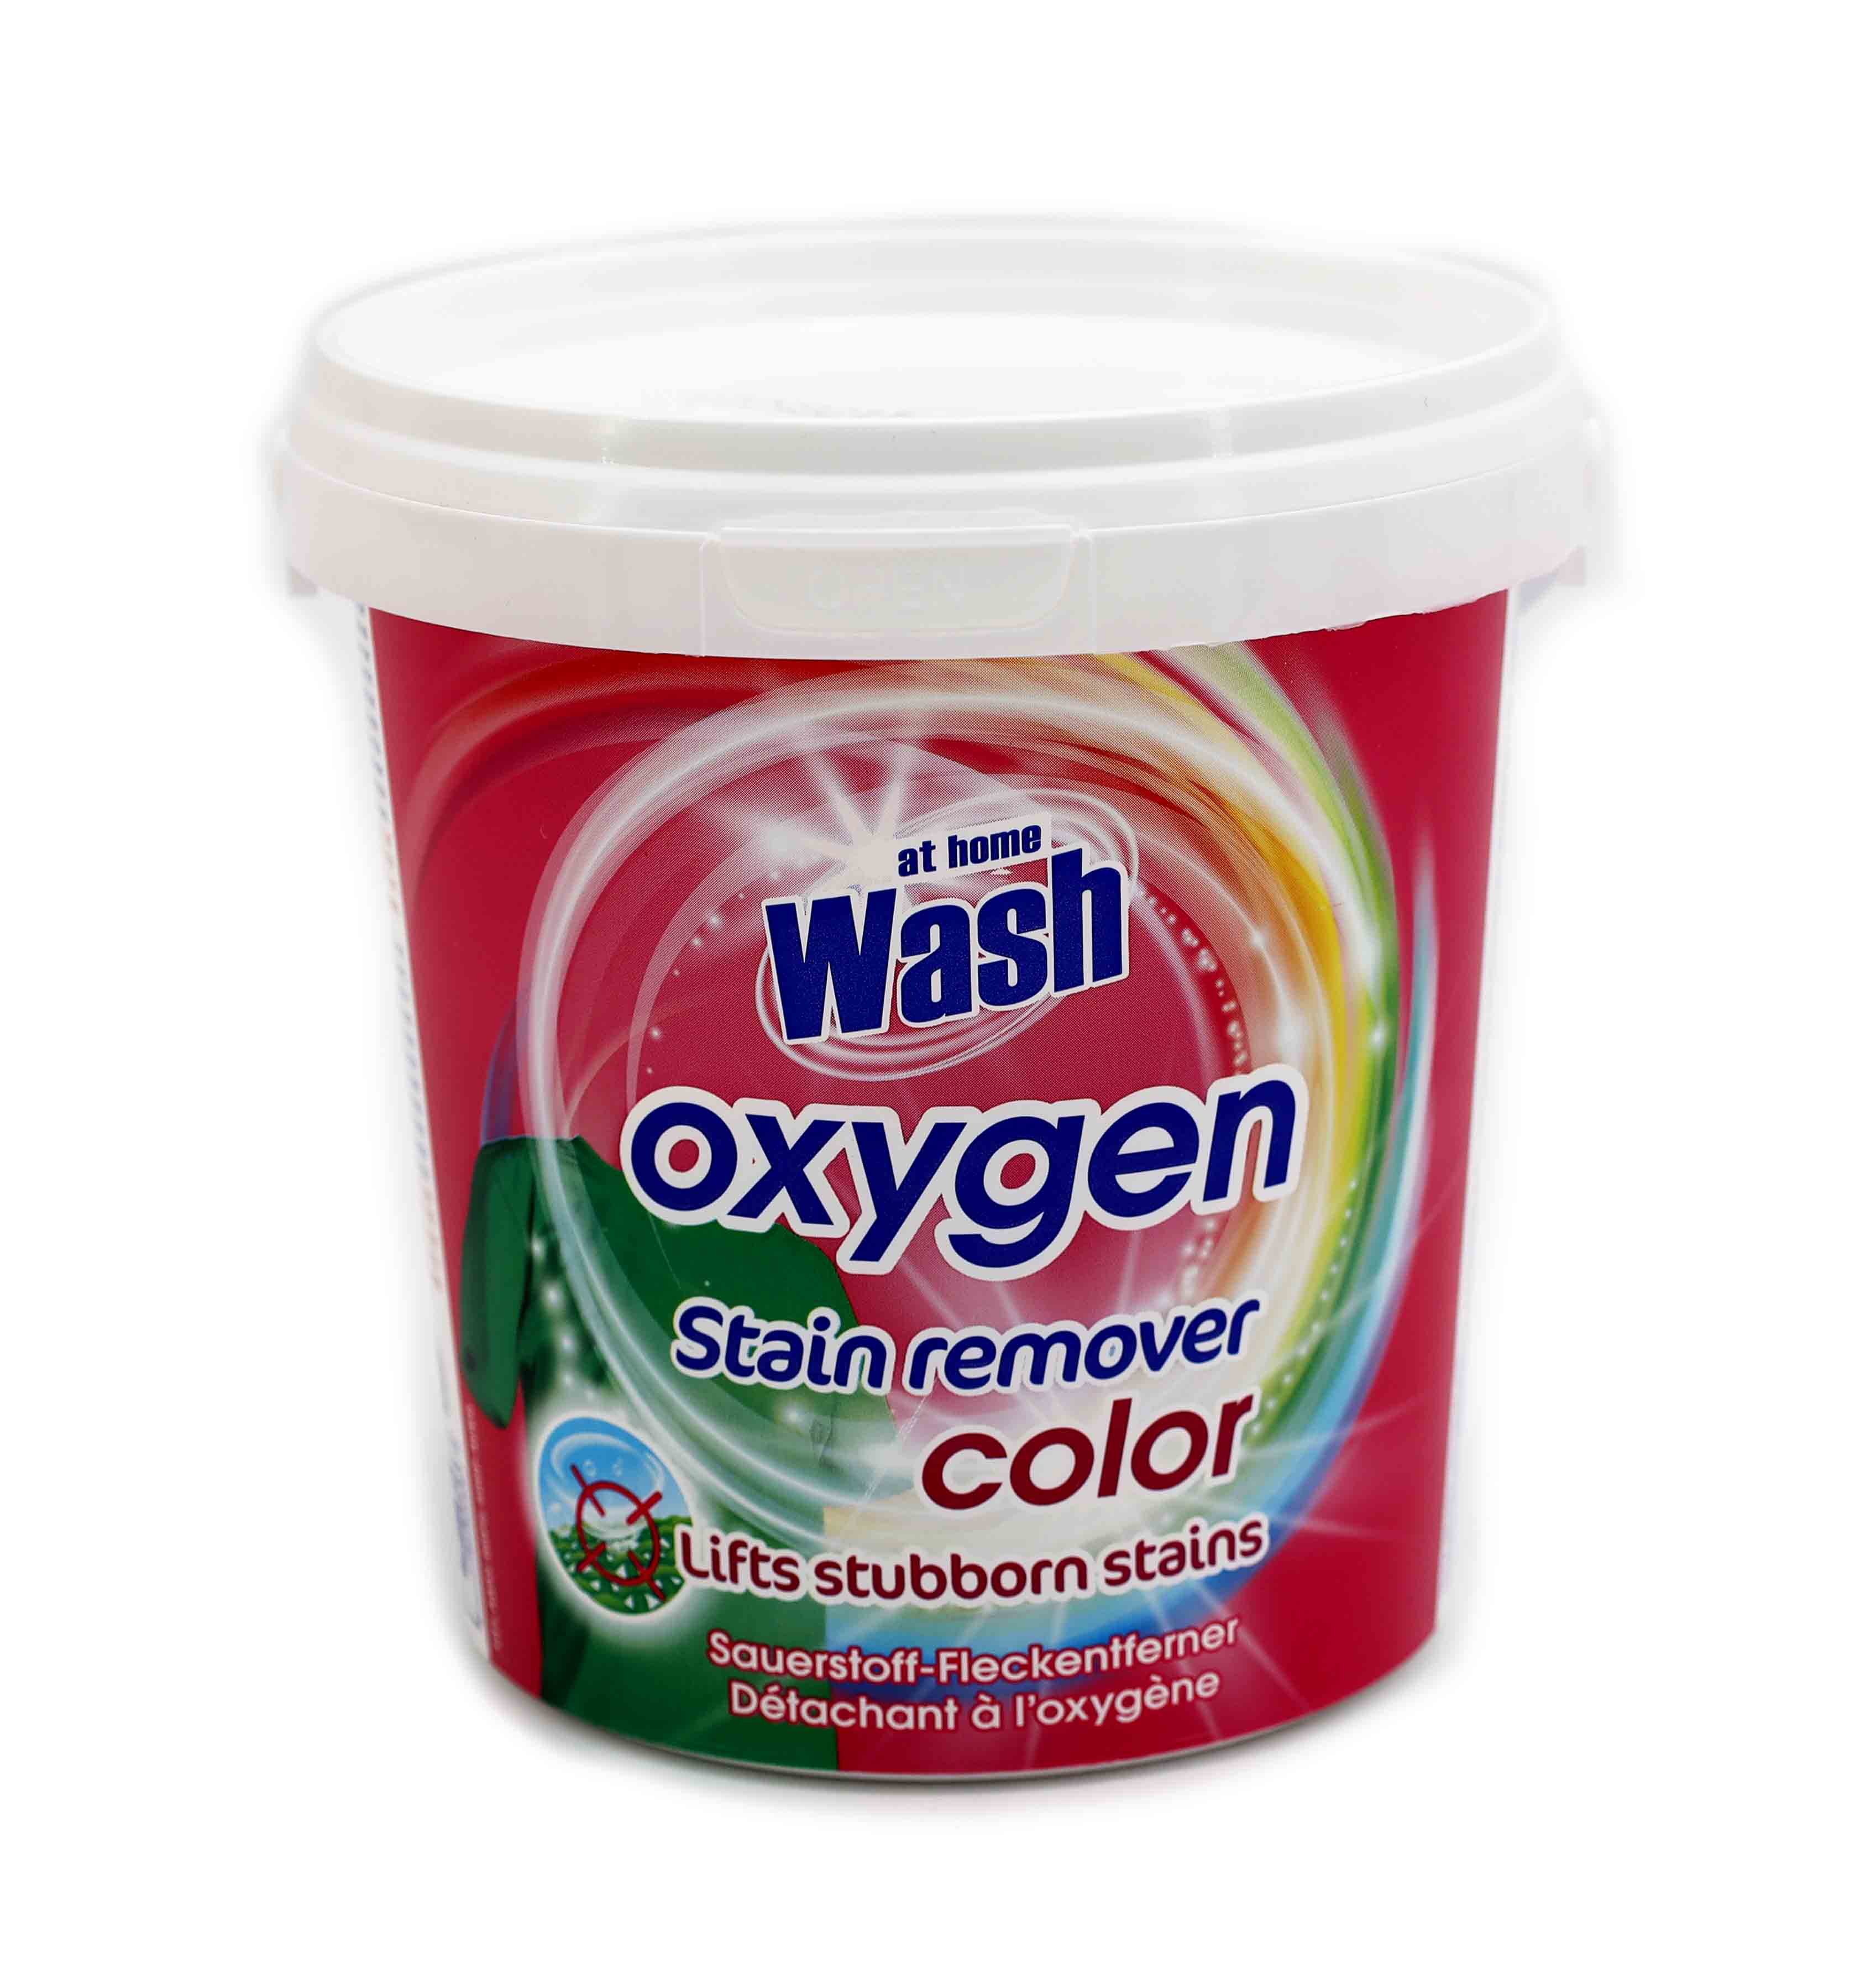 At Home Wash Fleckenentferner 900g Powder Color